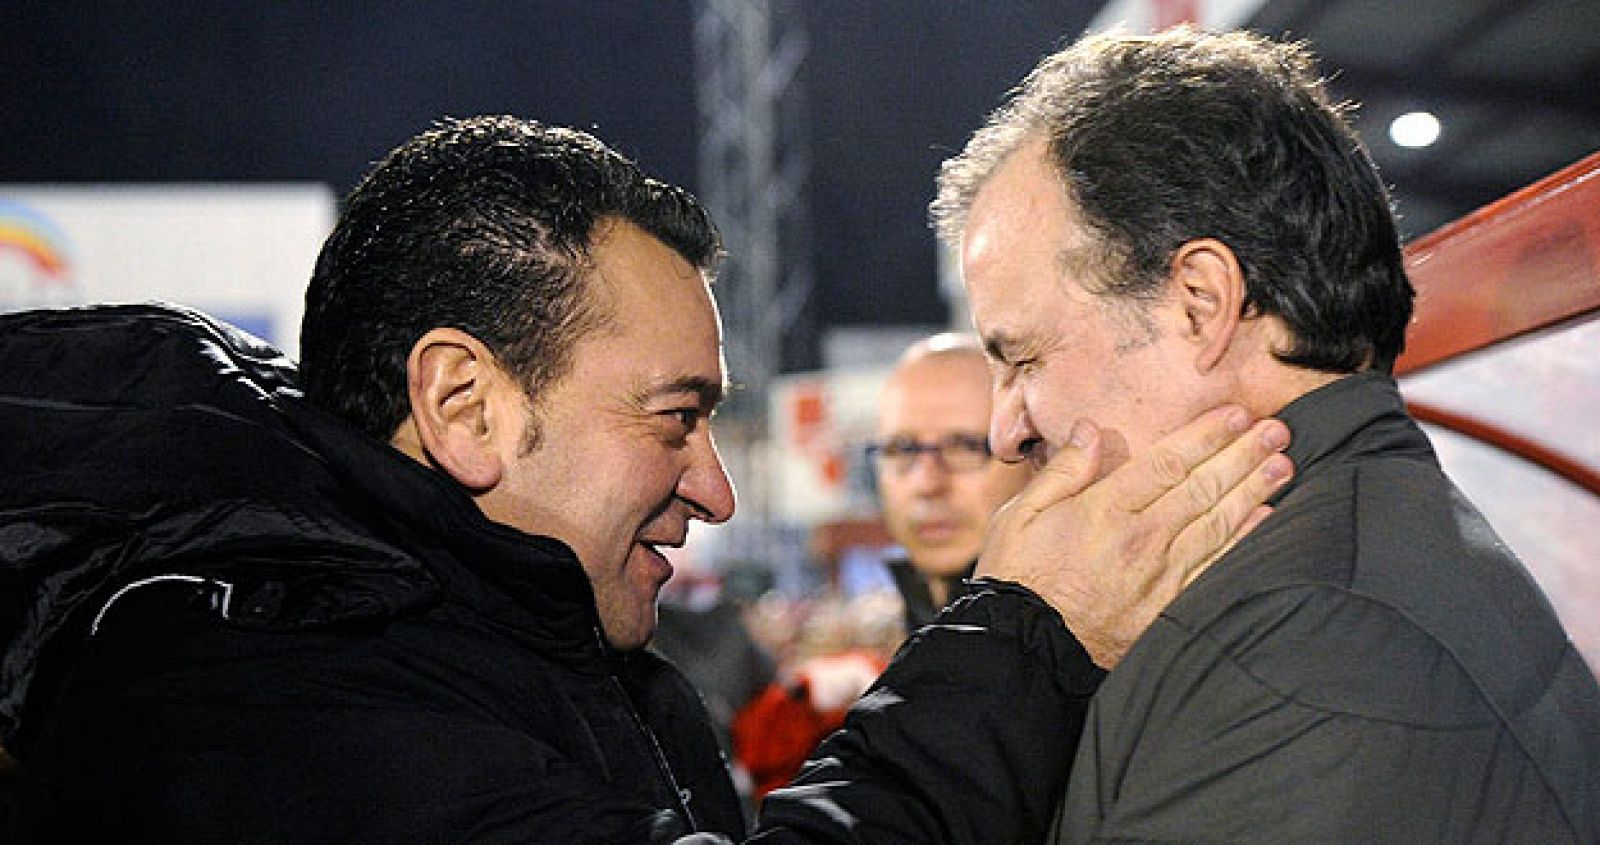 El entrenador del Mirandés, Carlos Pouso, saluda al del Atlethic Club de Bilbao, Marcelo Bielsa